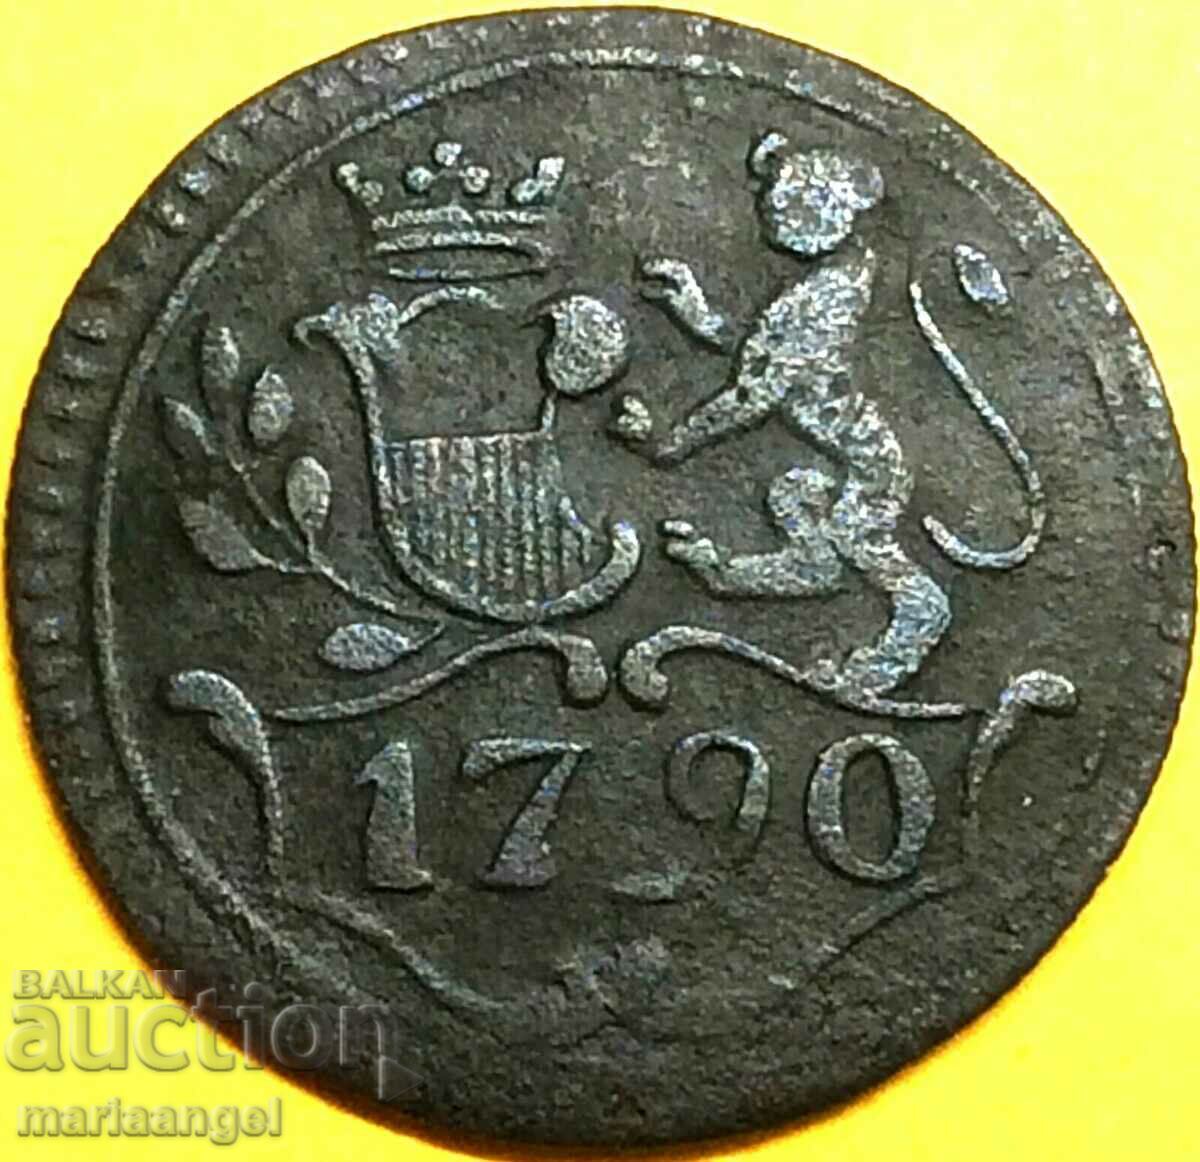 Lucca 1790 1 Bolonino Italy Carlo di Borbone 21mm copper